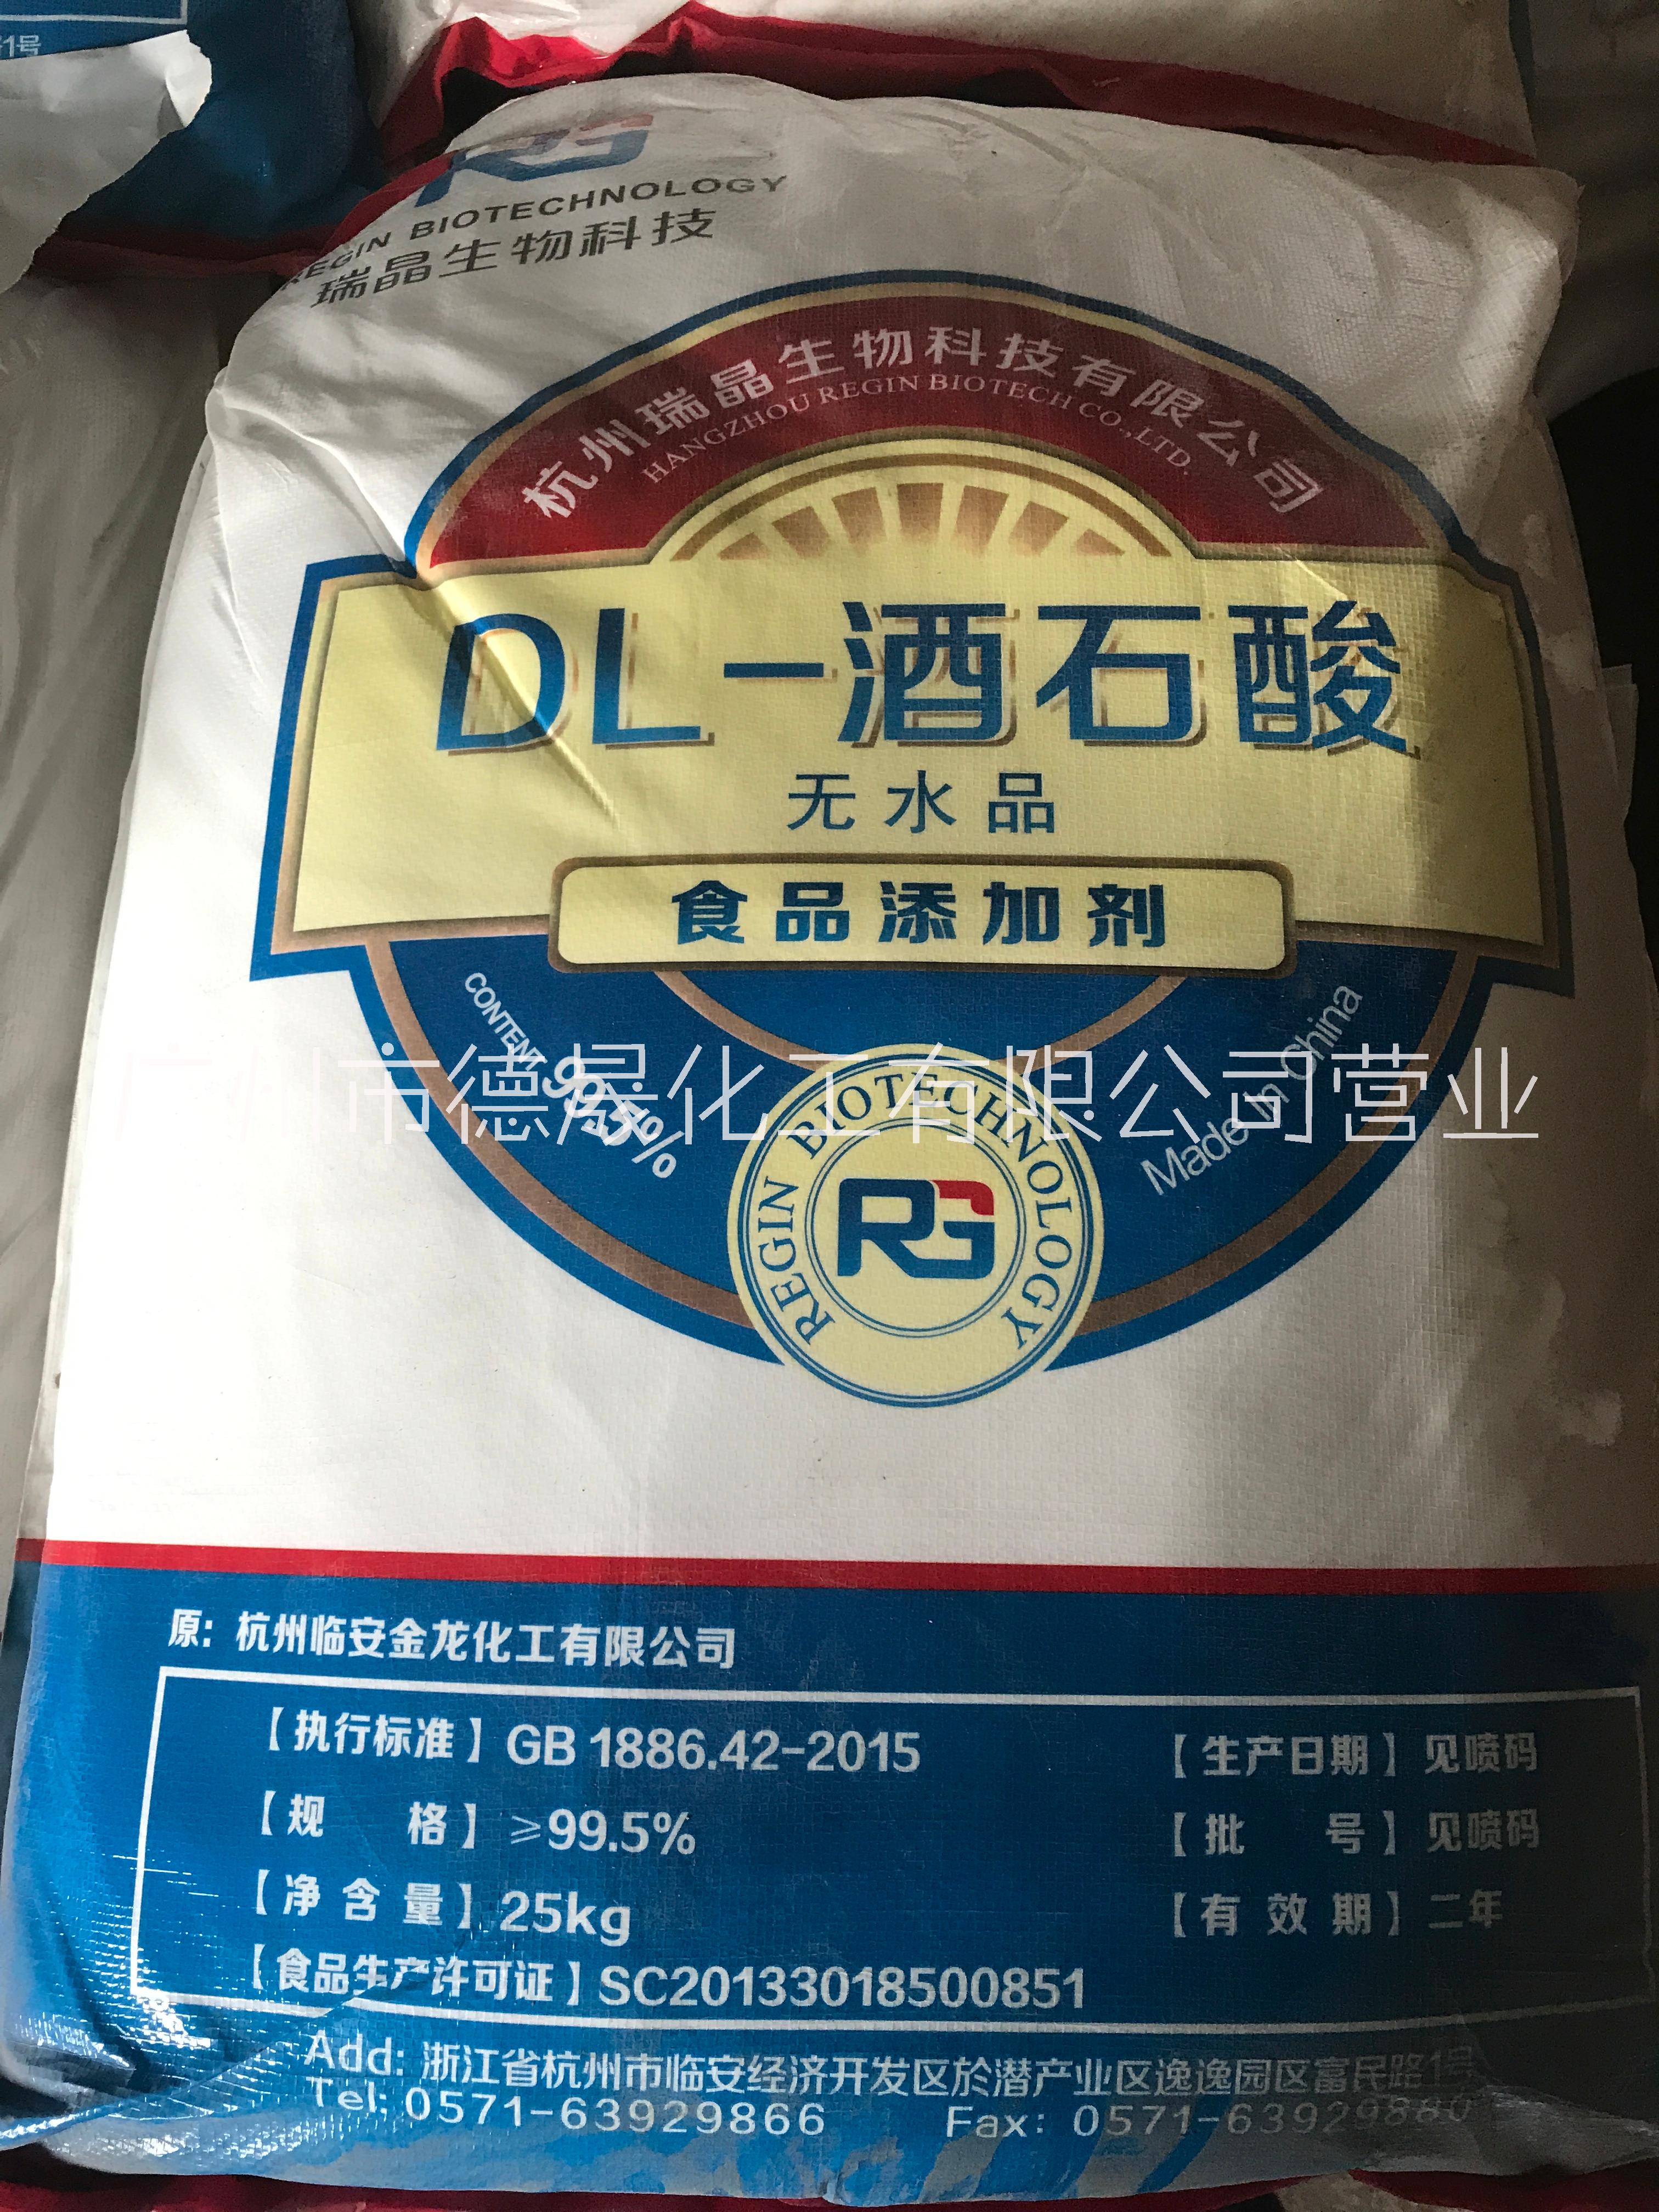 DL- 酒石酸 广州酒石酸品质稳定